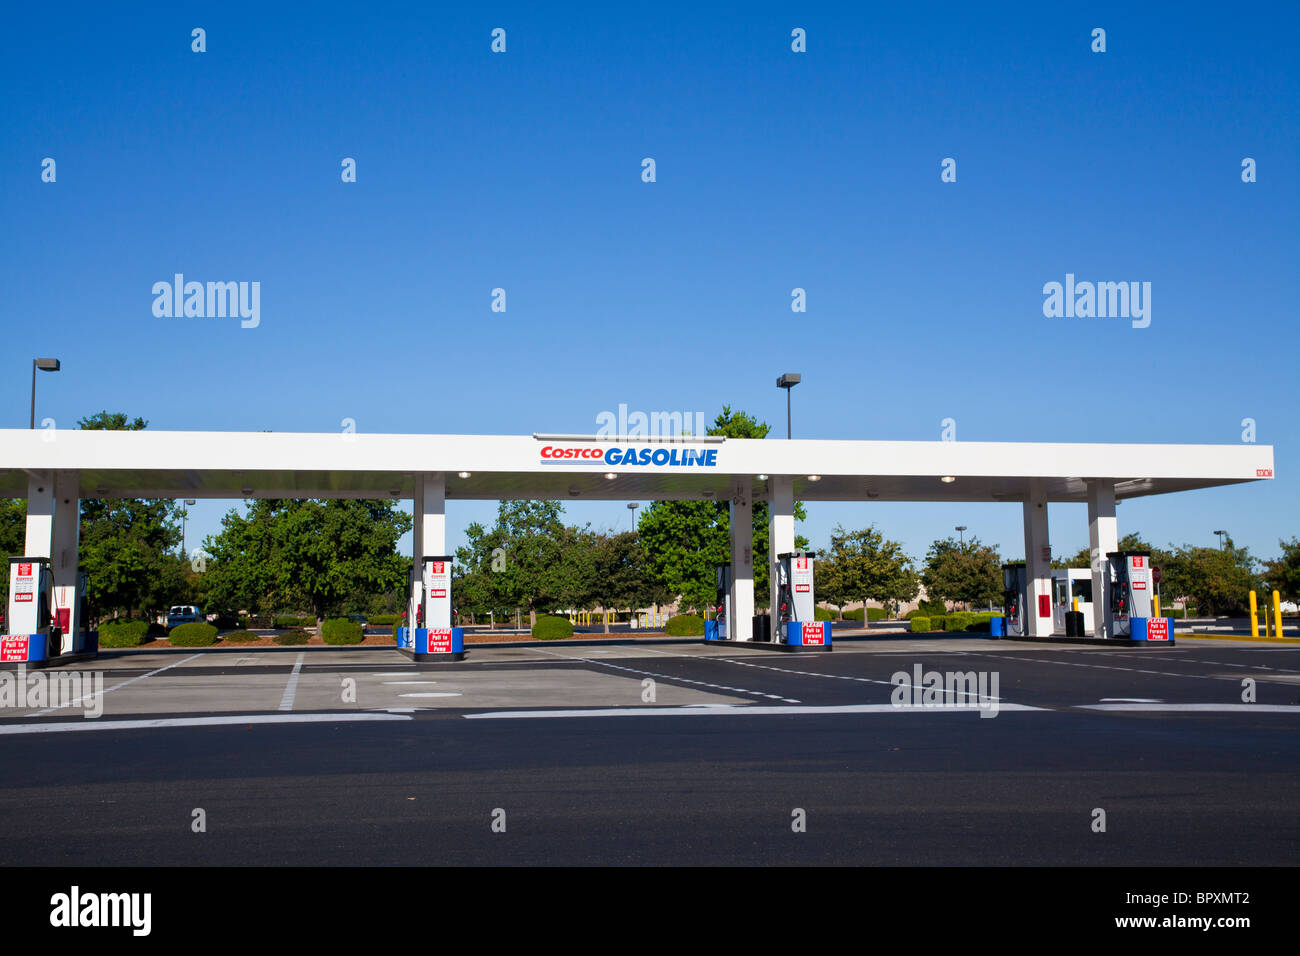 A Costco gasoline station in Modesto California Stock Photo